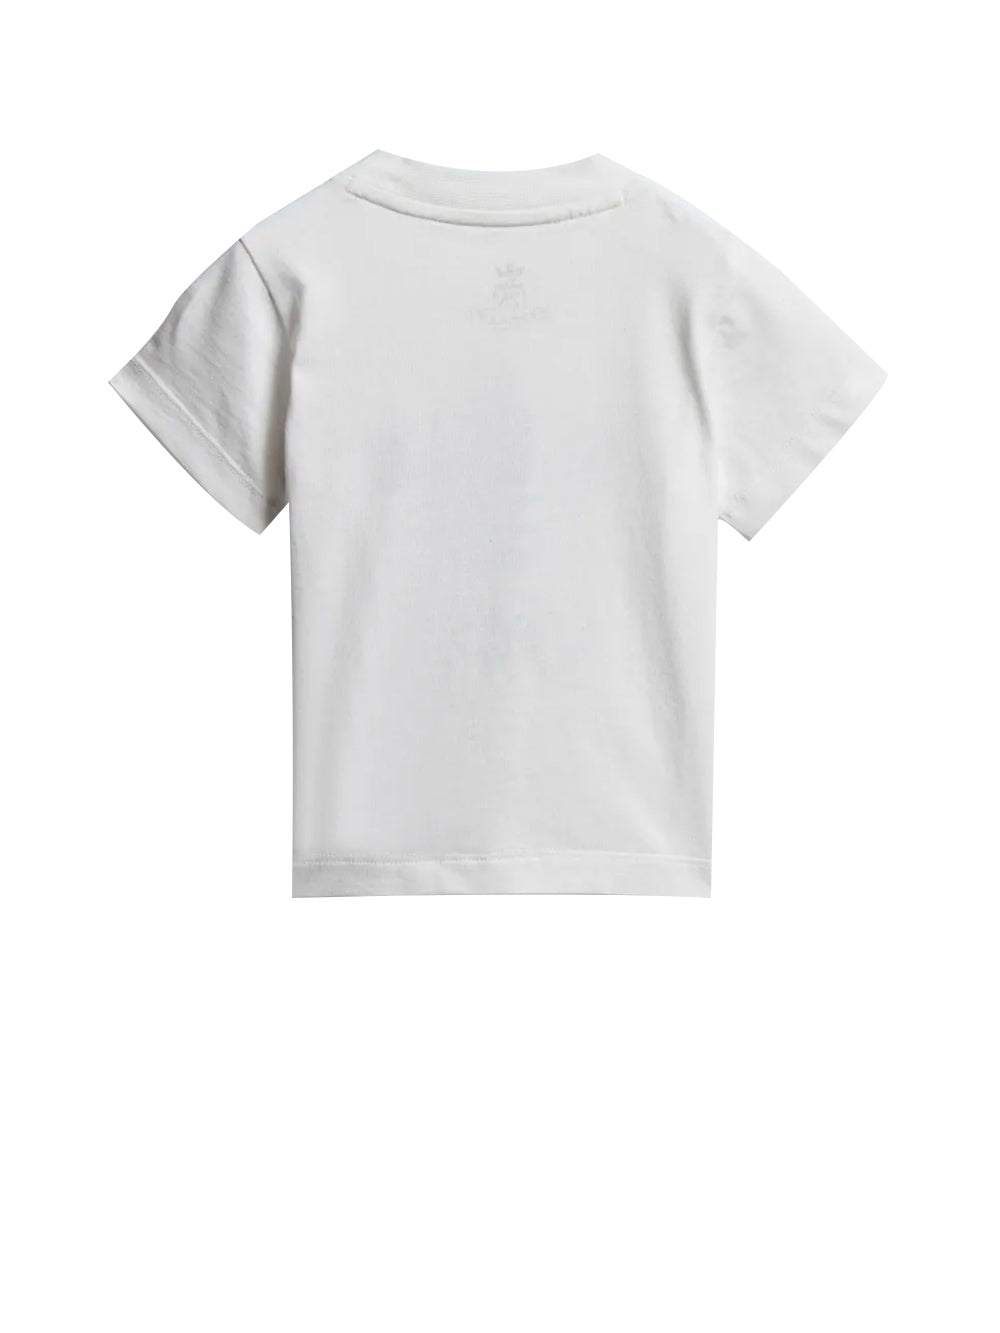 T-shirt Unisex Bambino a girocollo